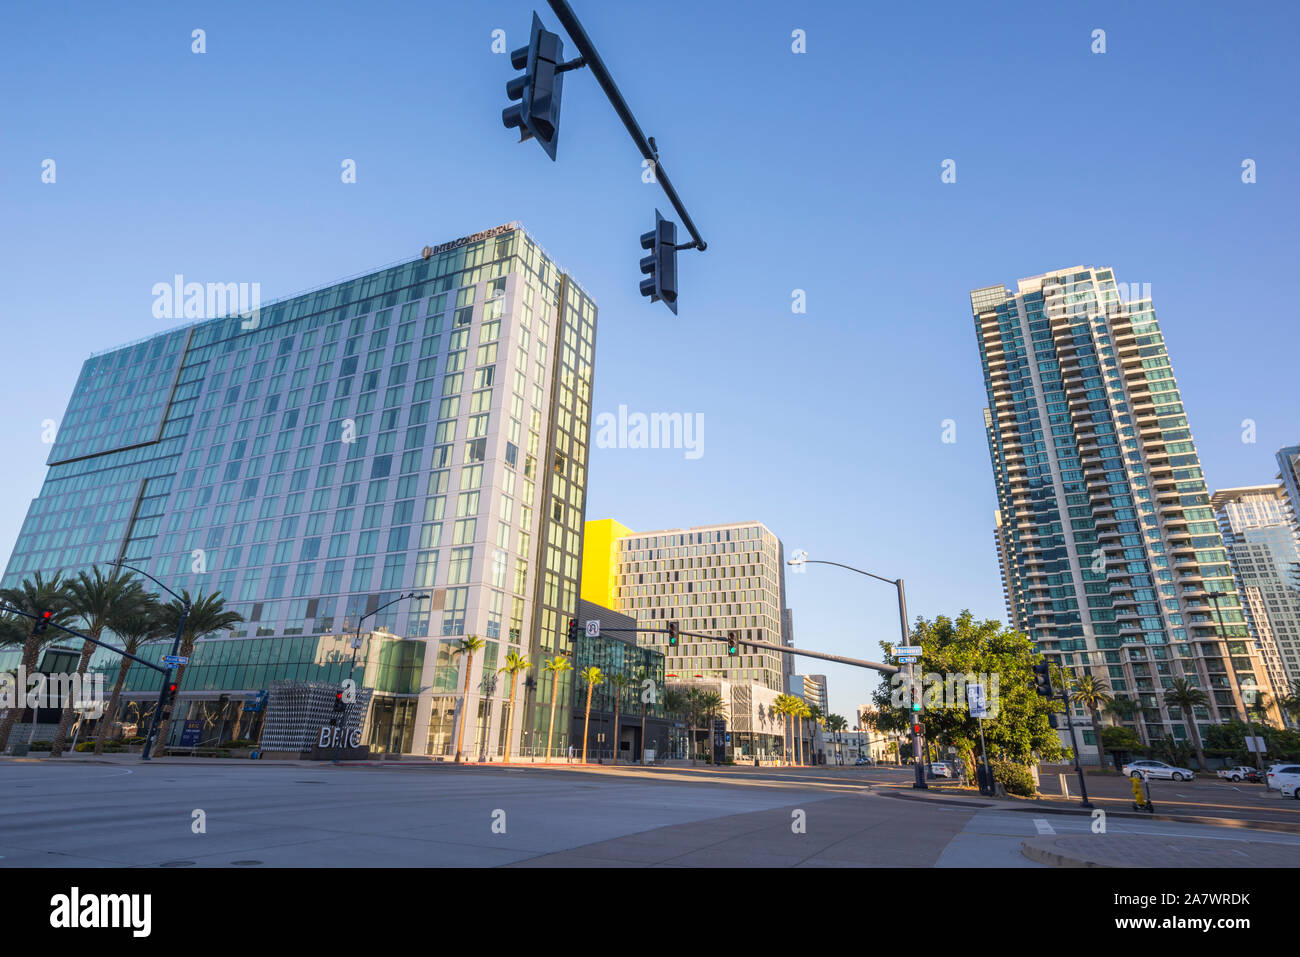 Stadtbild auf einem November Morgen. San Diego, Kalifornien, USA. Blick vom Broadway und Pacific Highway. Auf der linken Seite ist das Hotel Intercontinental. Stockfoto